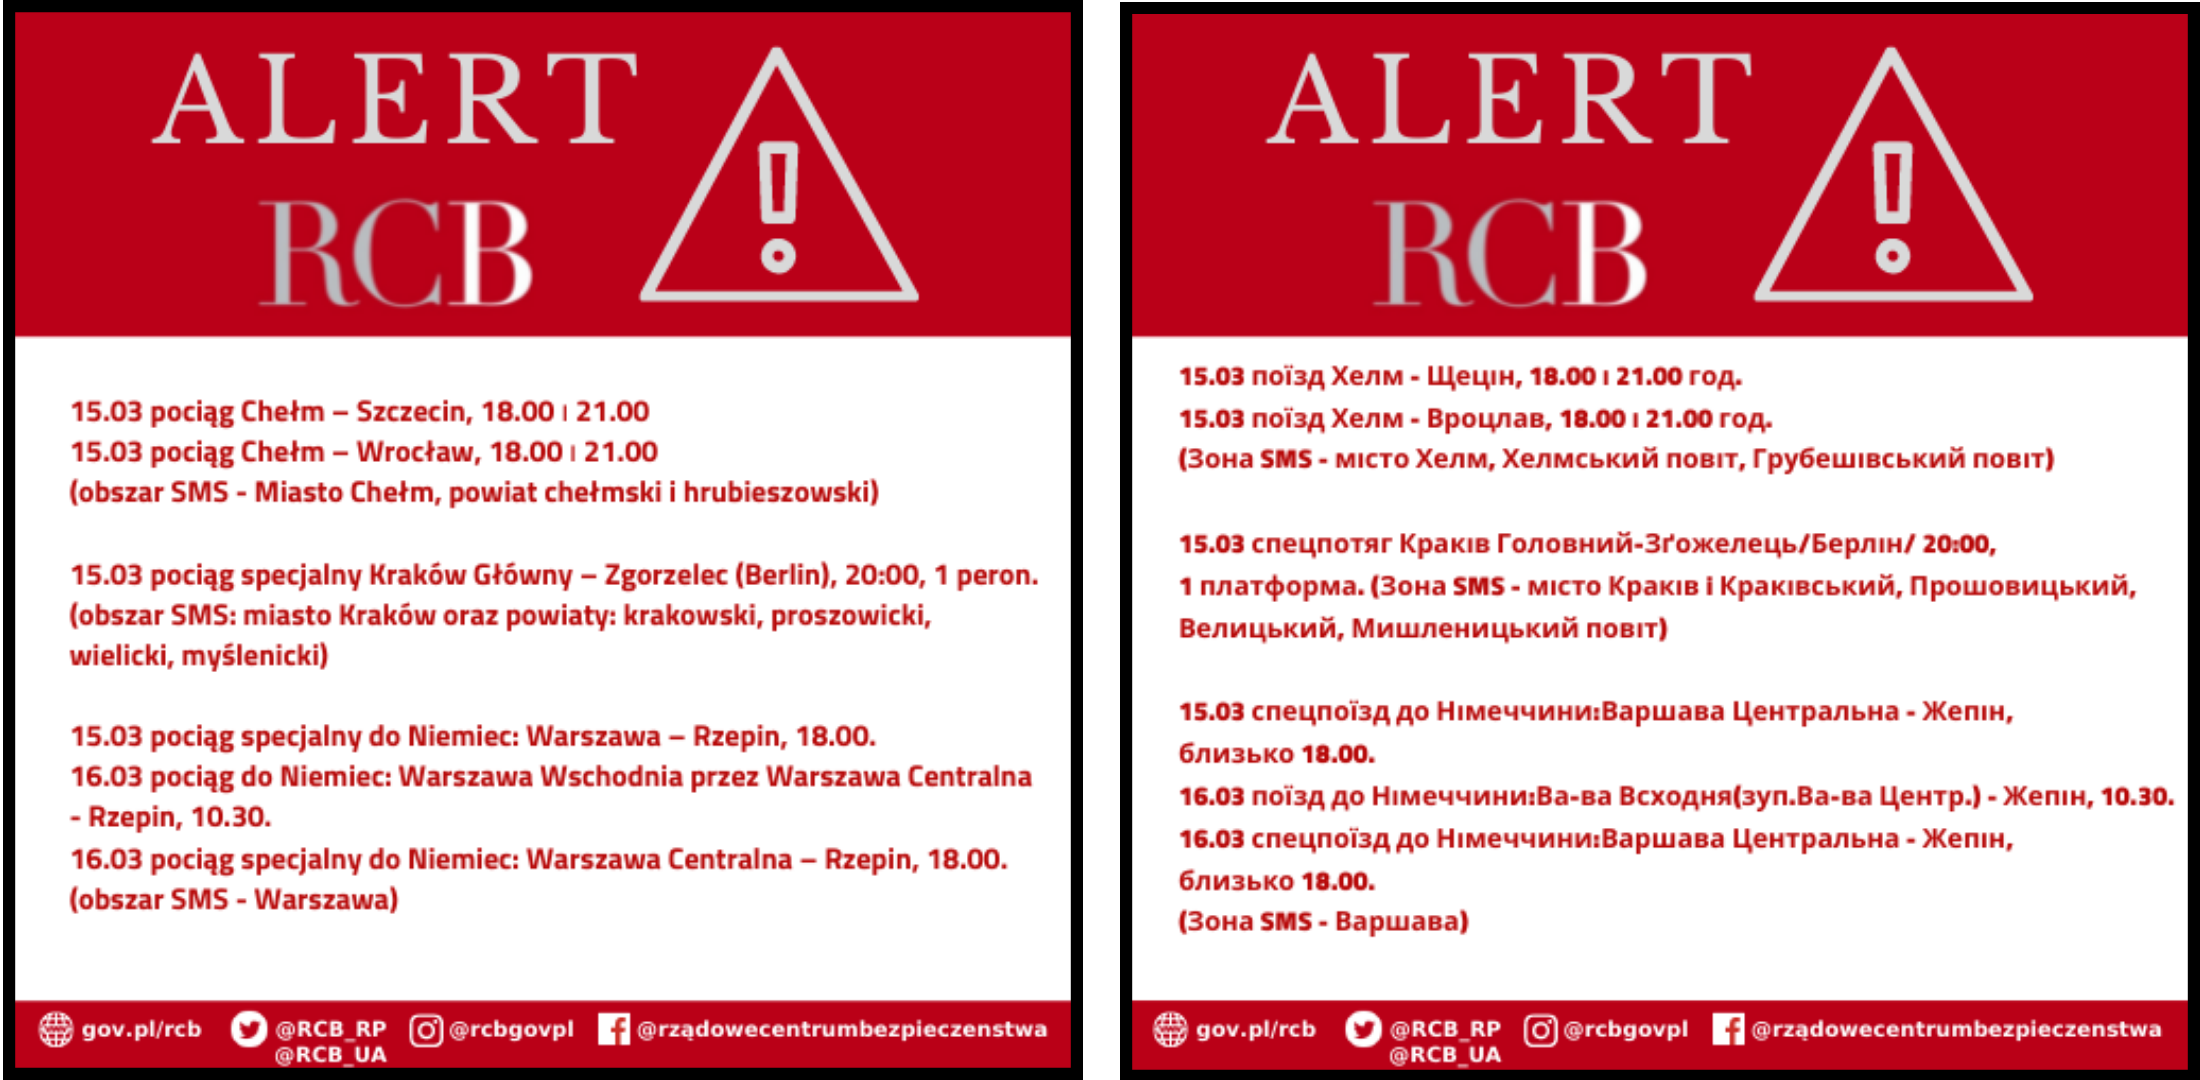 Alert RCB - pociąg specjalny